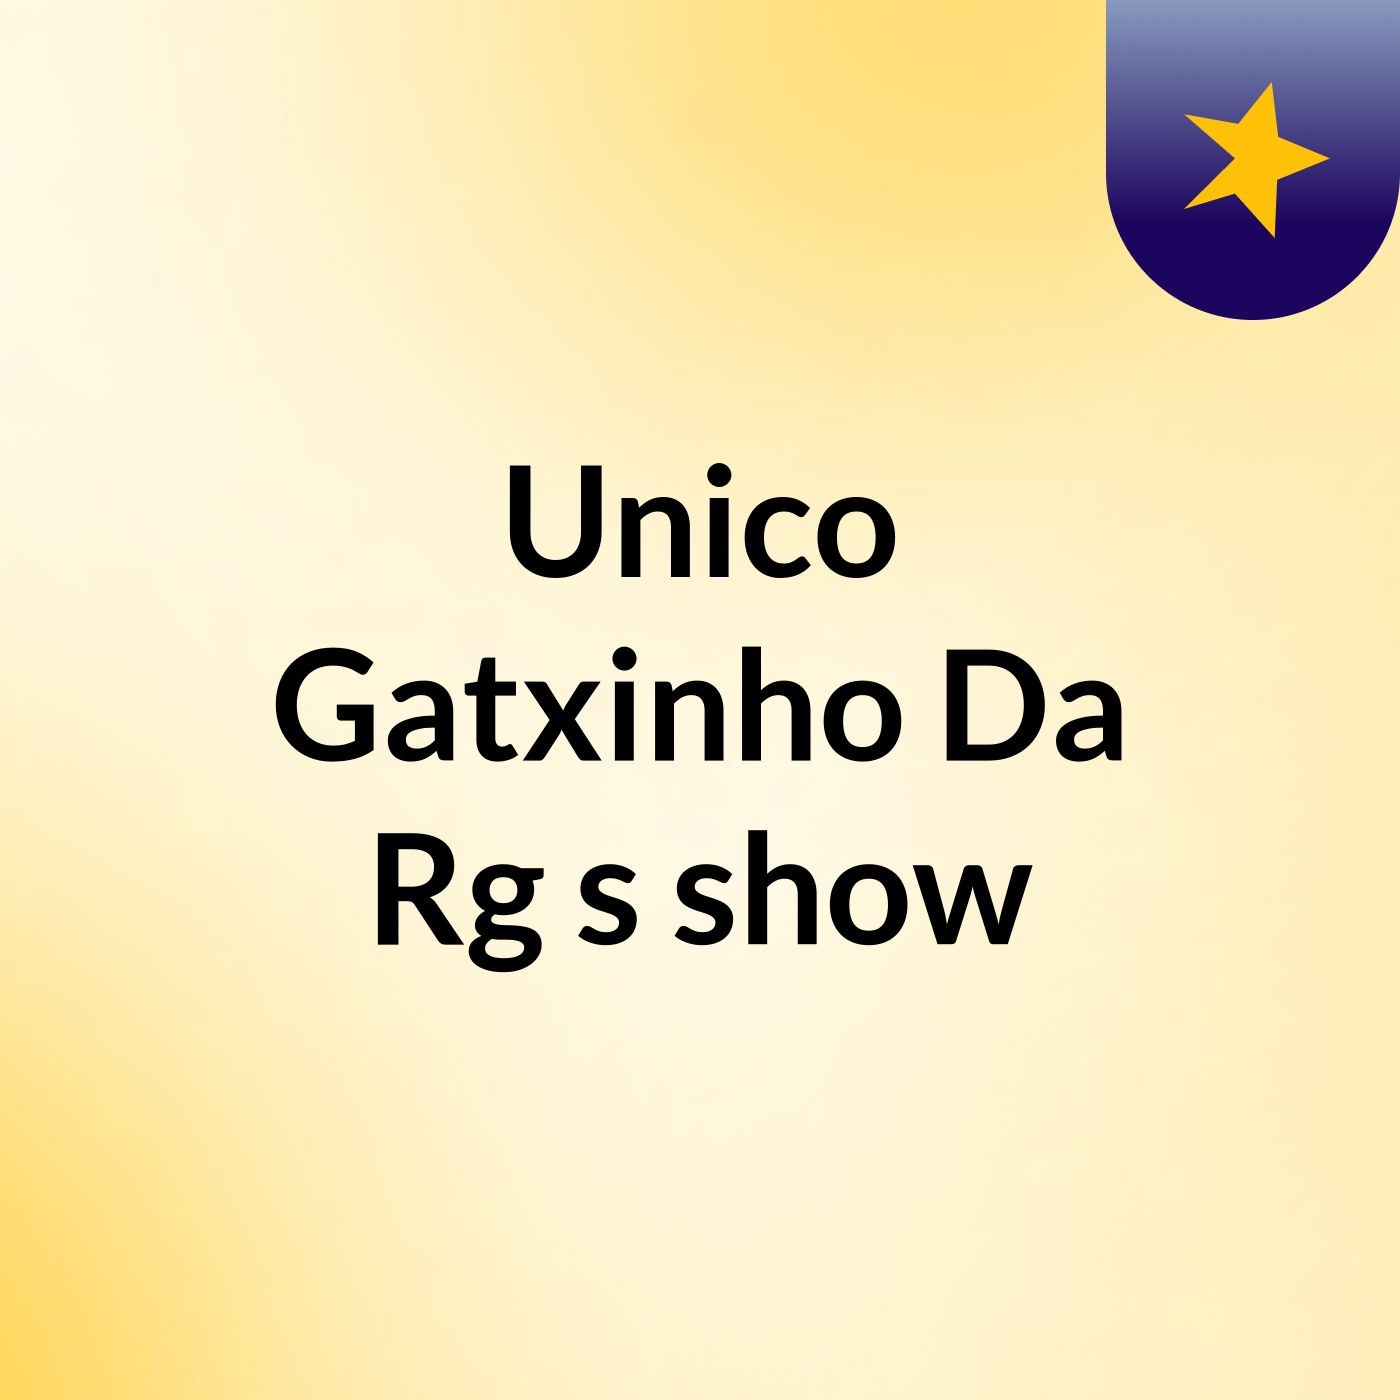 Unico Gatxinho Da Rg's show